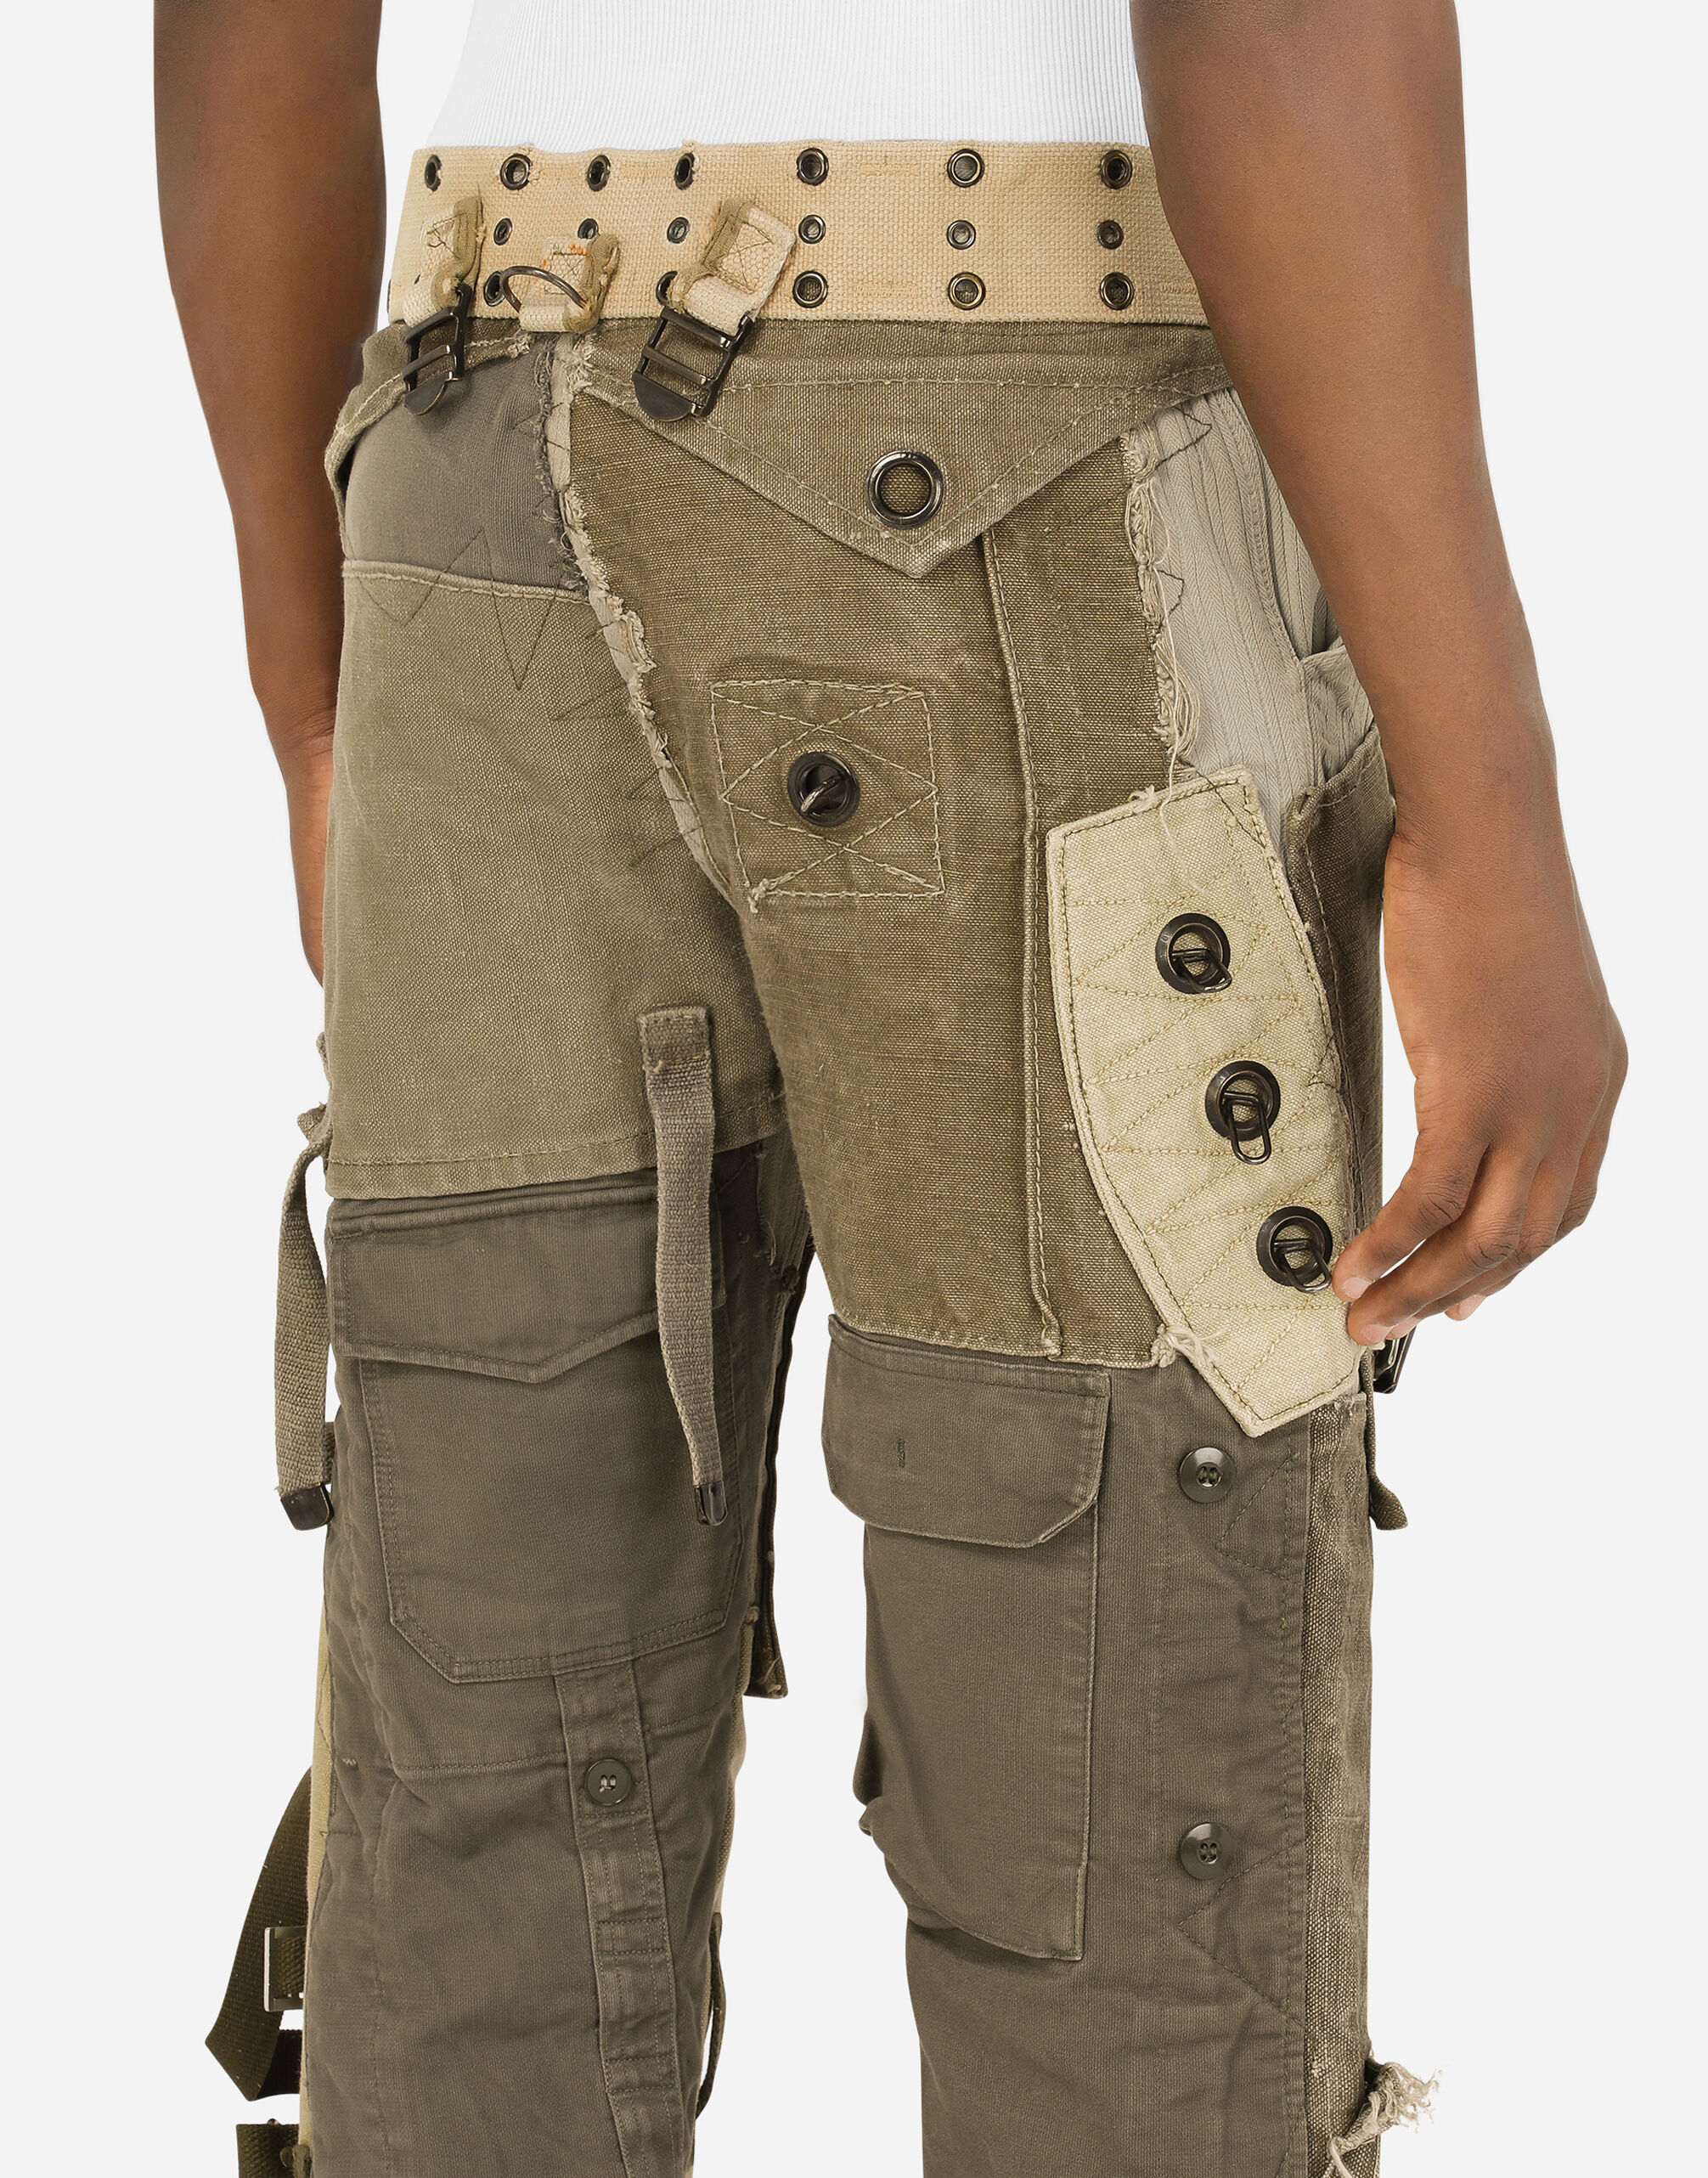 Cargo pants with vintage appliqués